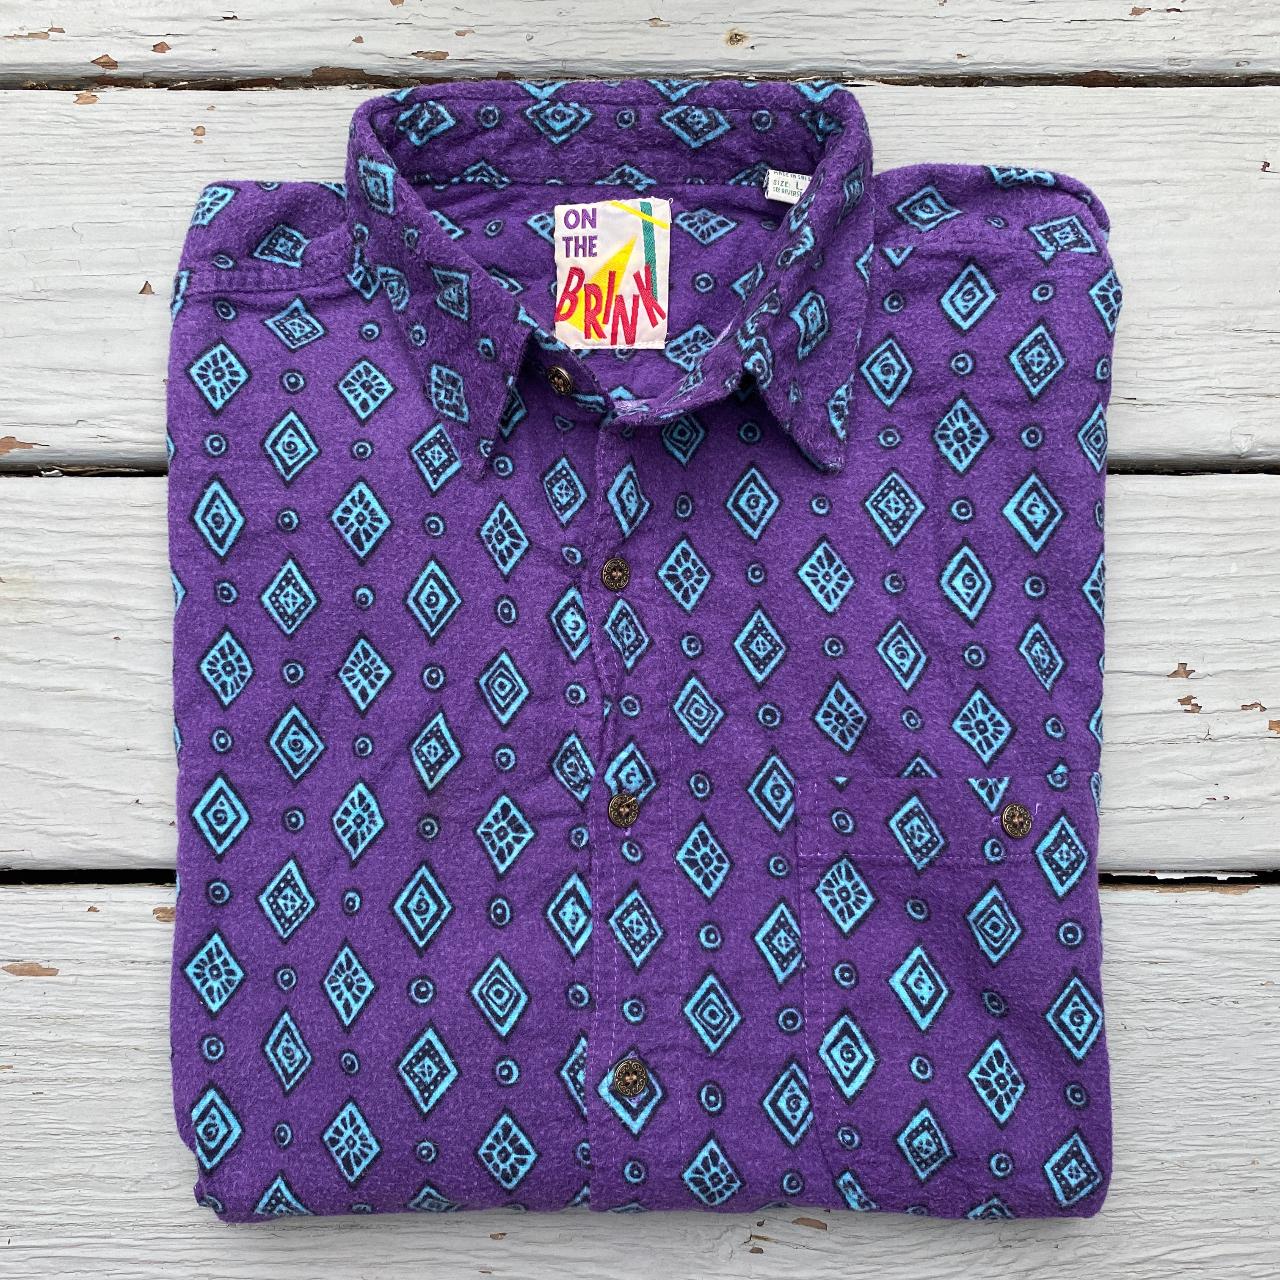 90s vintage all-over pattern / vintage Fresh Prince... - Depop